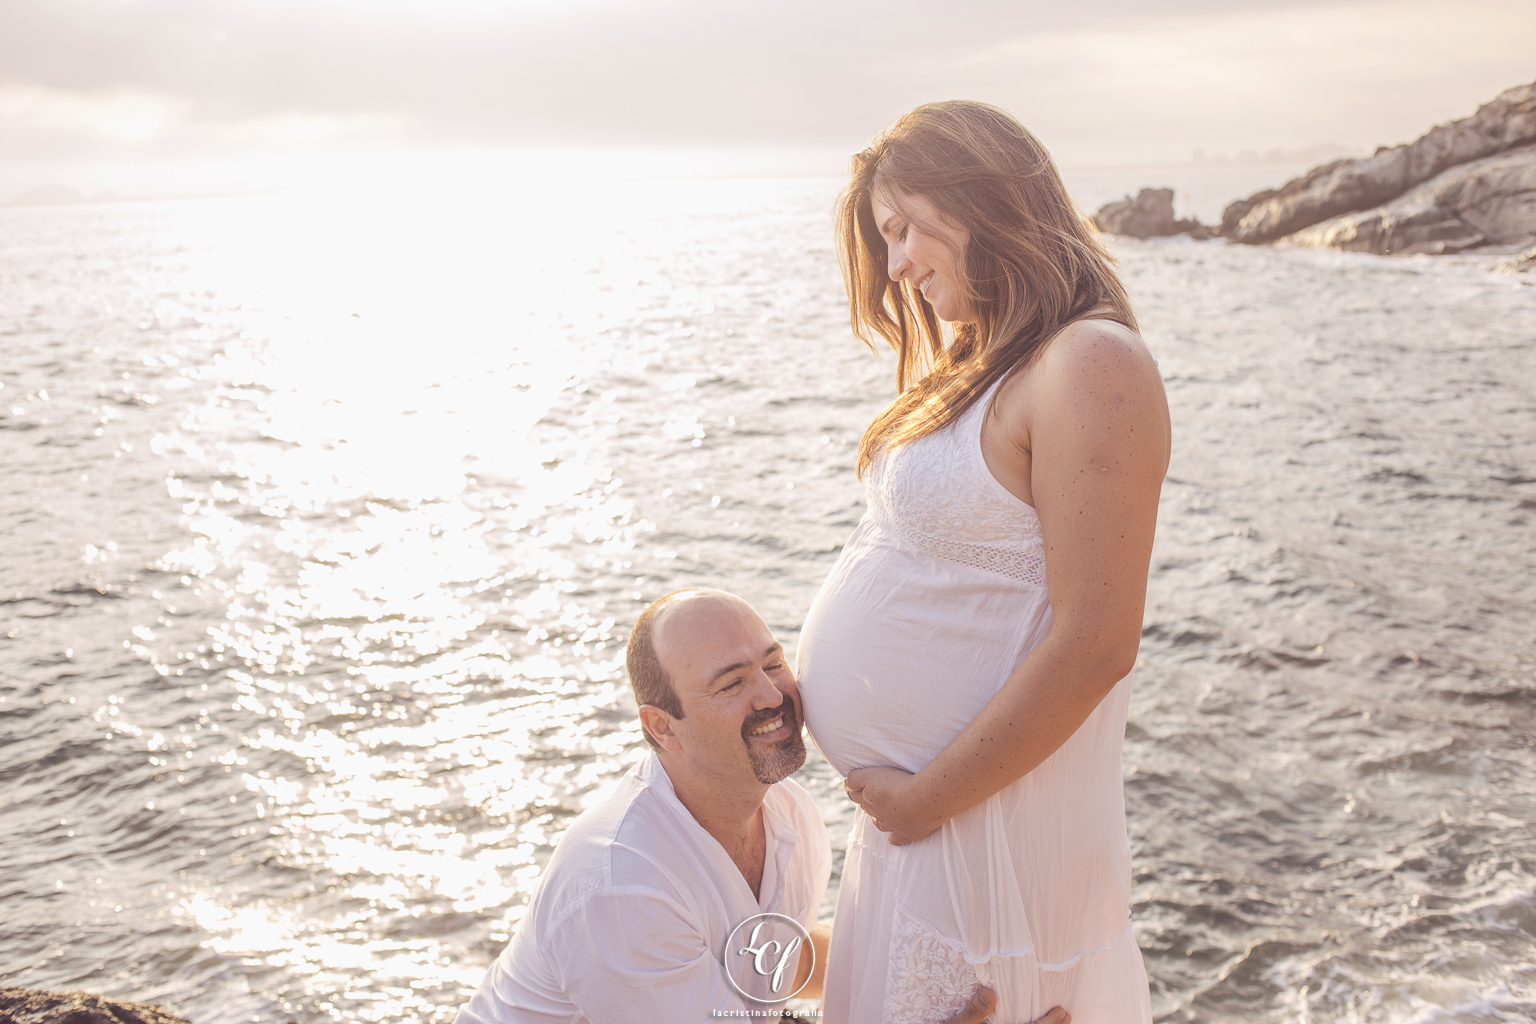 Fotógrafo embarazo Barcelona :: Fotógrafo embarazo playa :: Fotografía embarazada playa :: Fotógrafo costa brava :: Fotografía embarazada puesta de sol